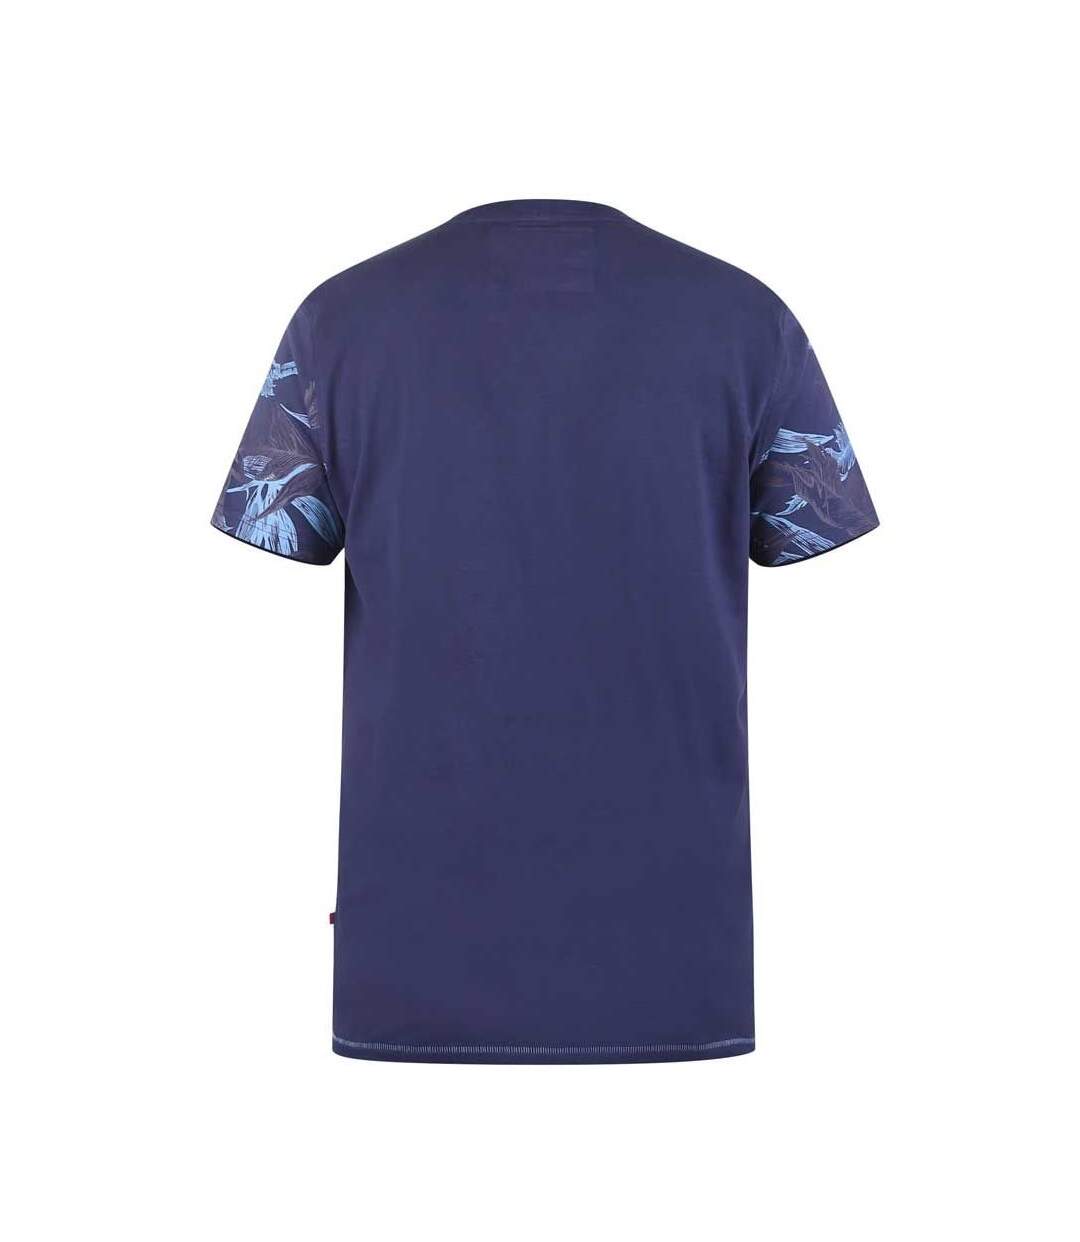 Duke - T-shirt BROMLEY D555 - Homme (Bleu marine) - UTDC345